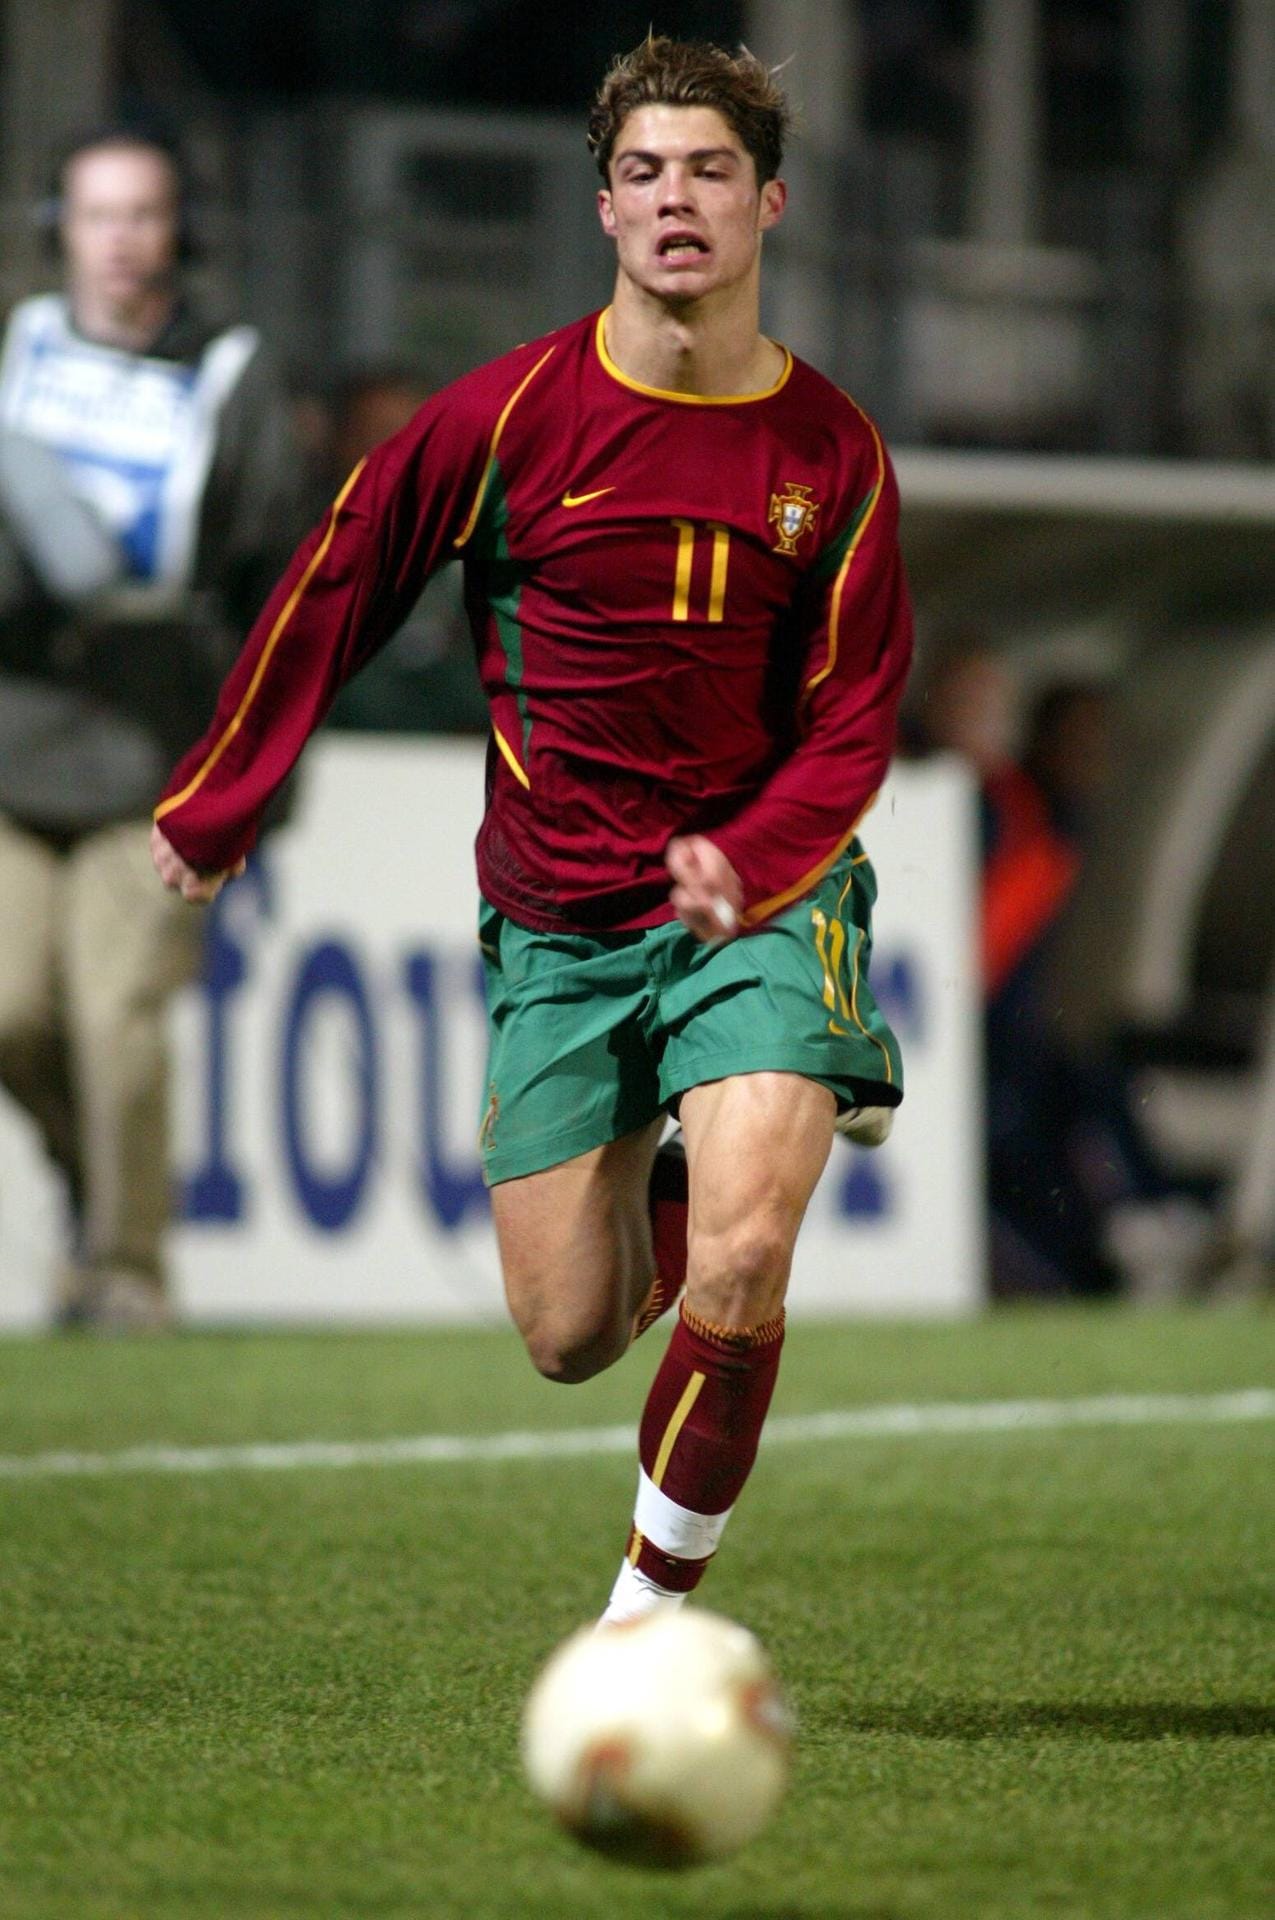 Erstes Länderspiel 2003: Bei seinem Debüt in der Nationalmannschaft trat Ronaldo als Kapitän auf und überzeugte mit dem gewonnenen Freundschaftspiel gegen Kasachstan (1:0).